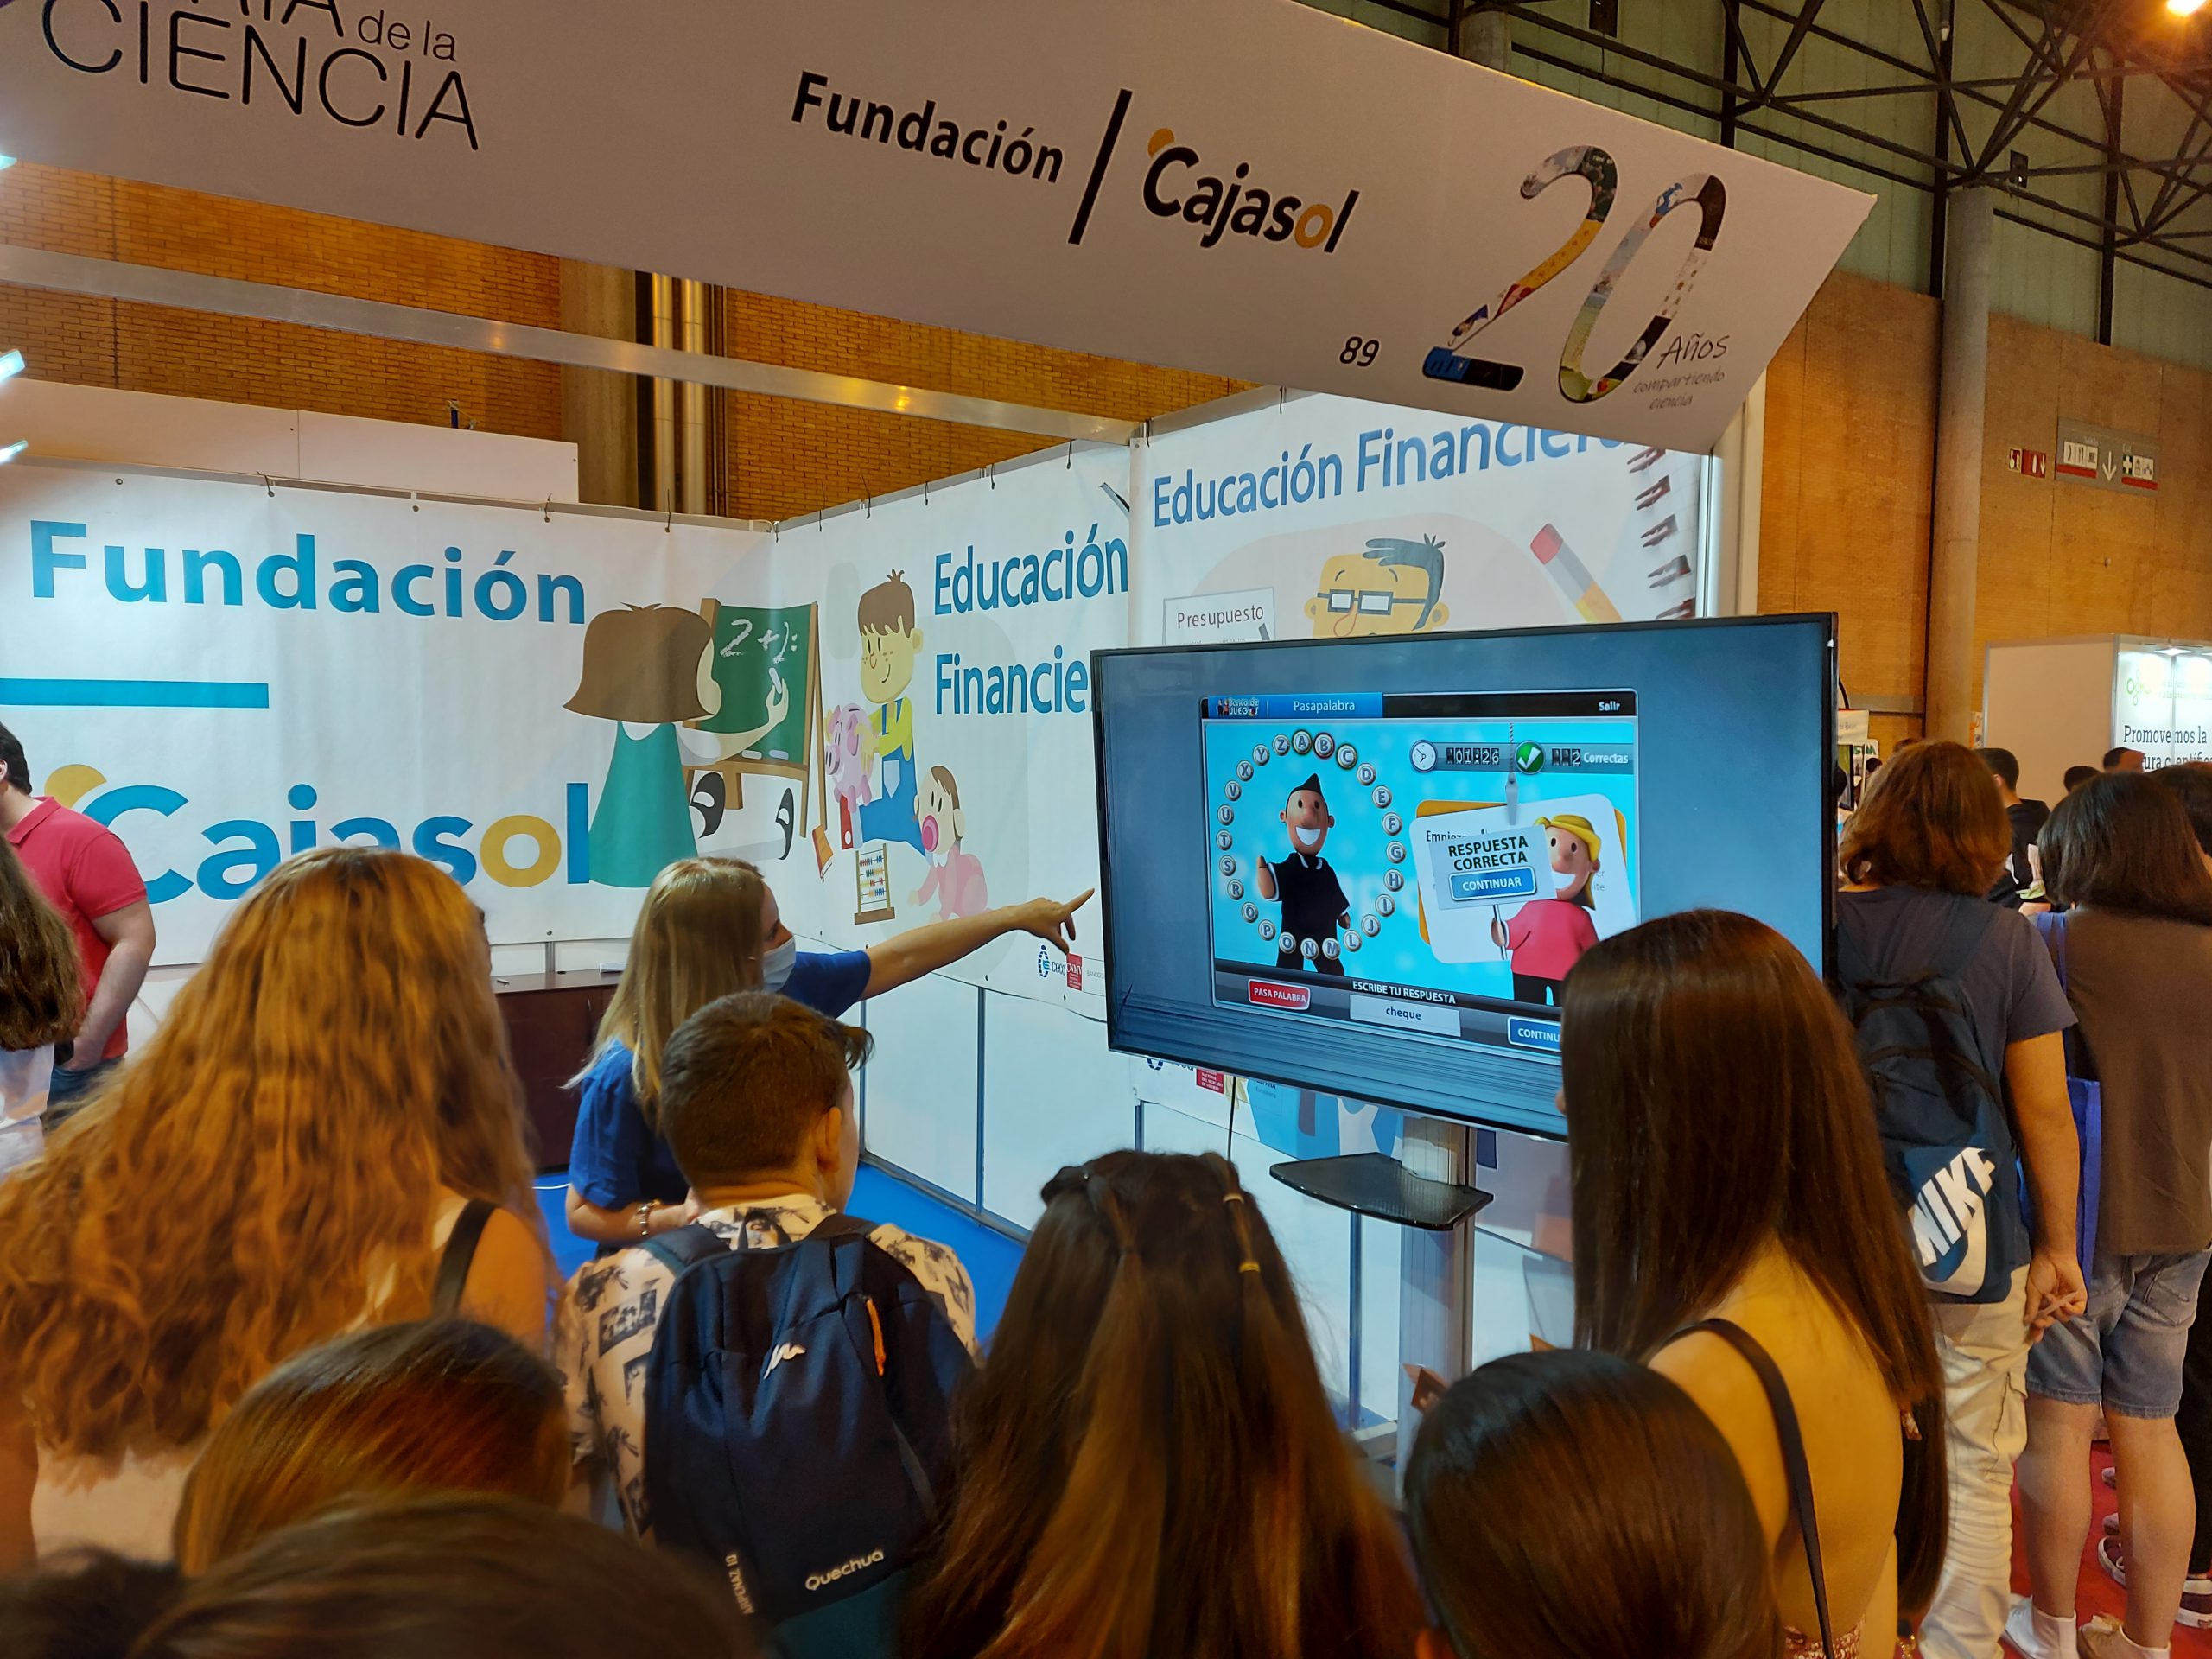 La Educación Financiera de la Fundación Cajasol no falta a la Feria de la Ciencia de Sevilla